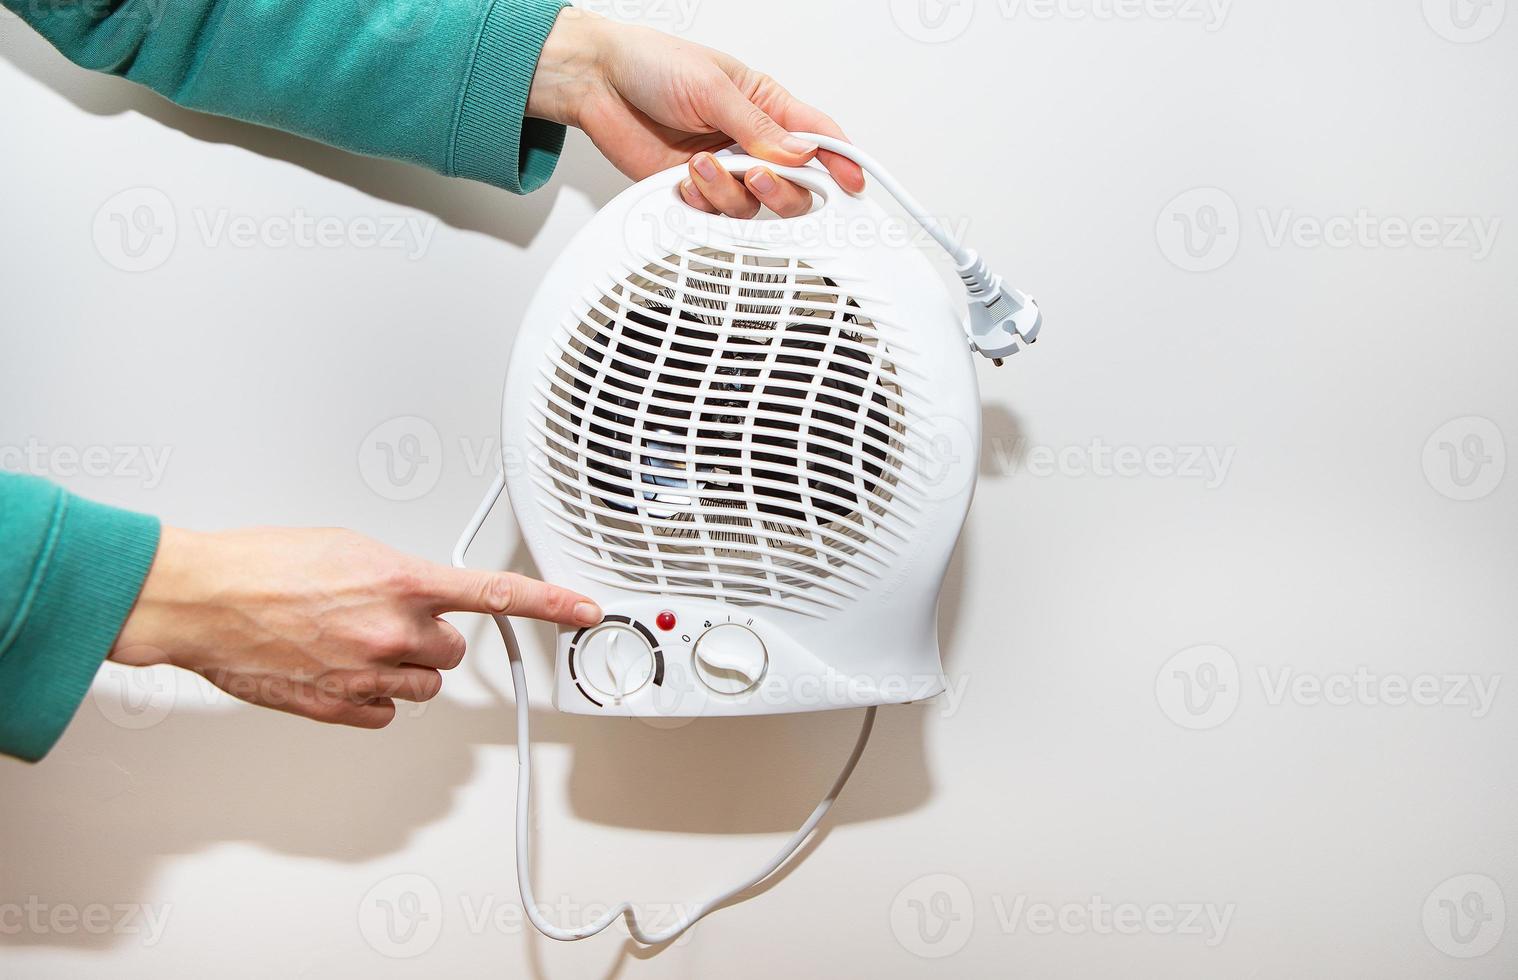 calentador aislado sobre un fondo blanco. una niña sostiene un calefactor de plástico y muestra el controlador de temperatura. foto